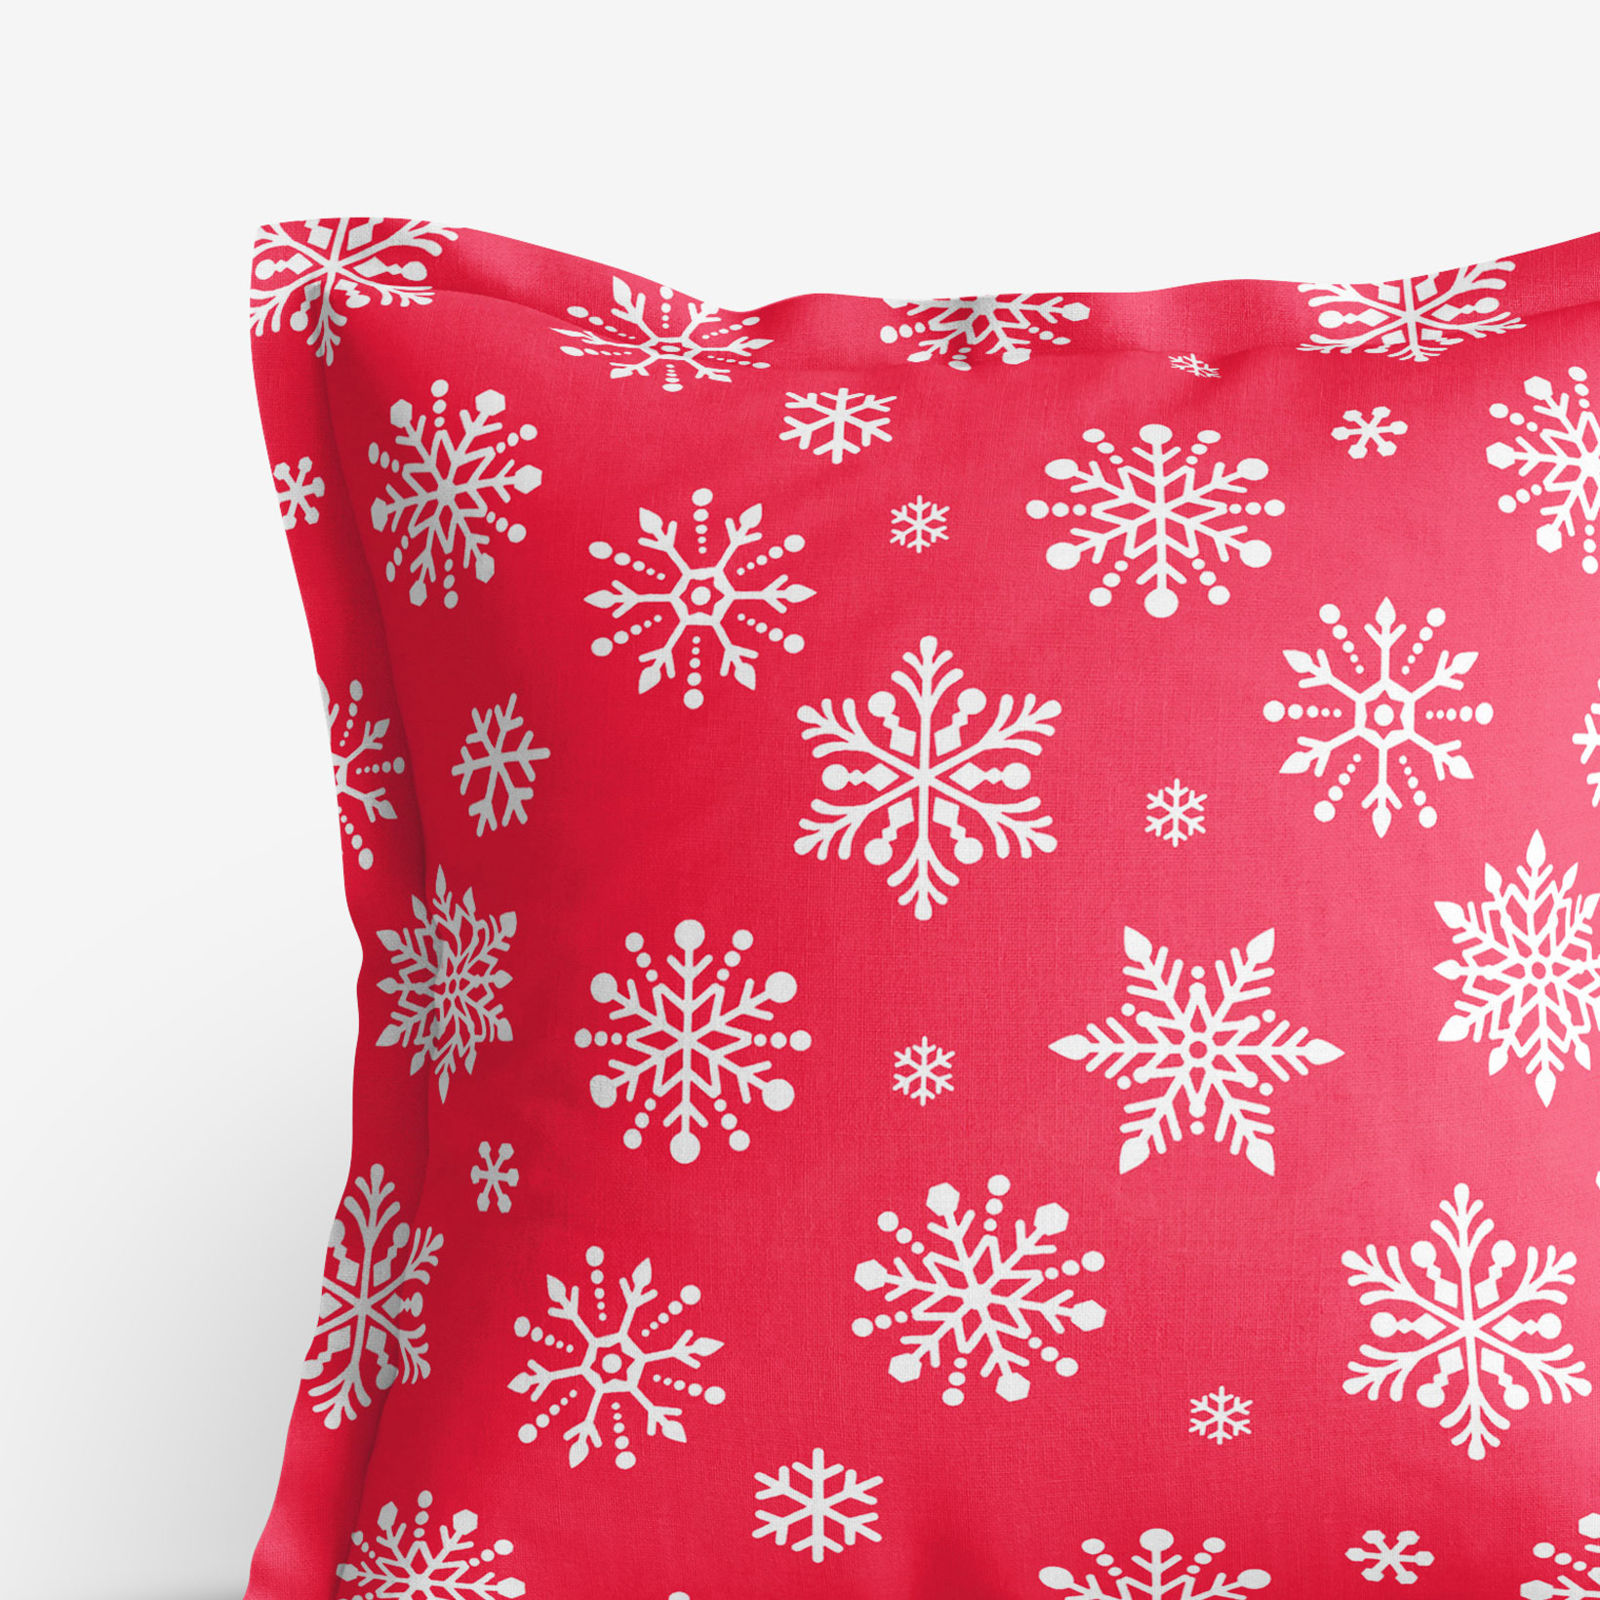 Poszewka na poduszkę z ozdobną kantą bawełniana - płatki śniegu na jaskrawej czerwieni